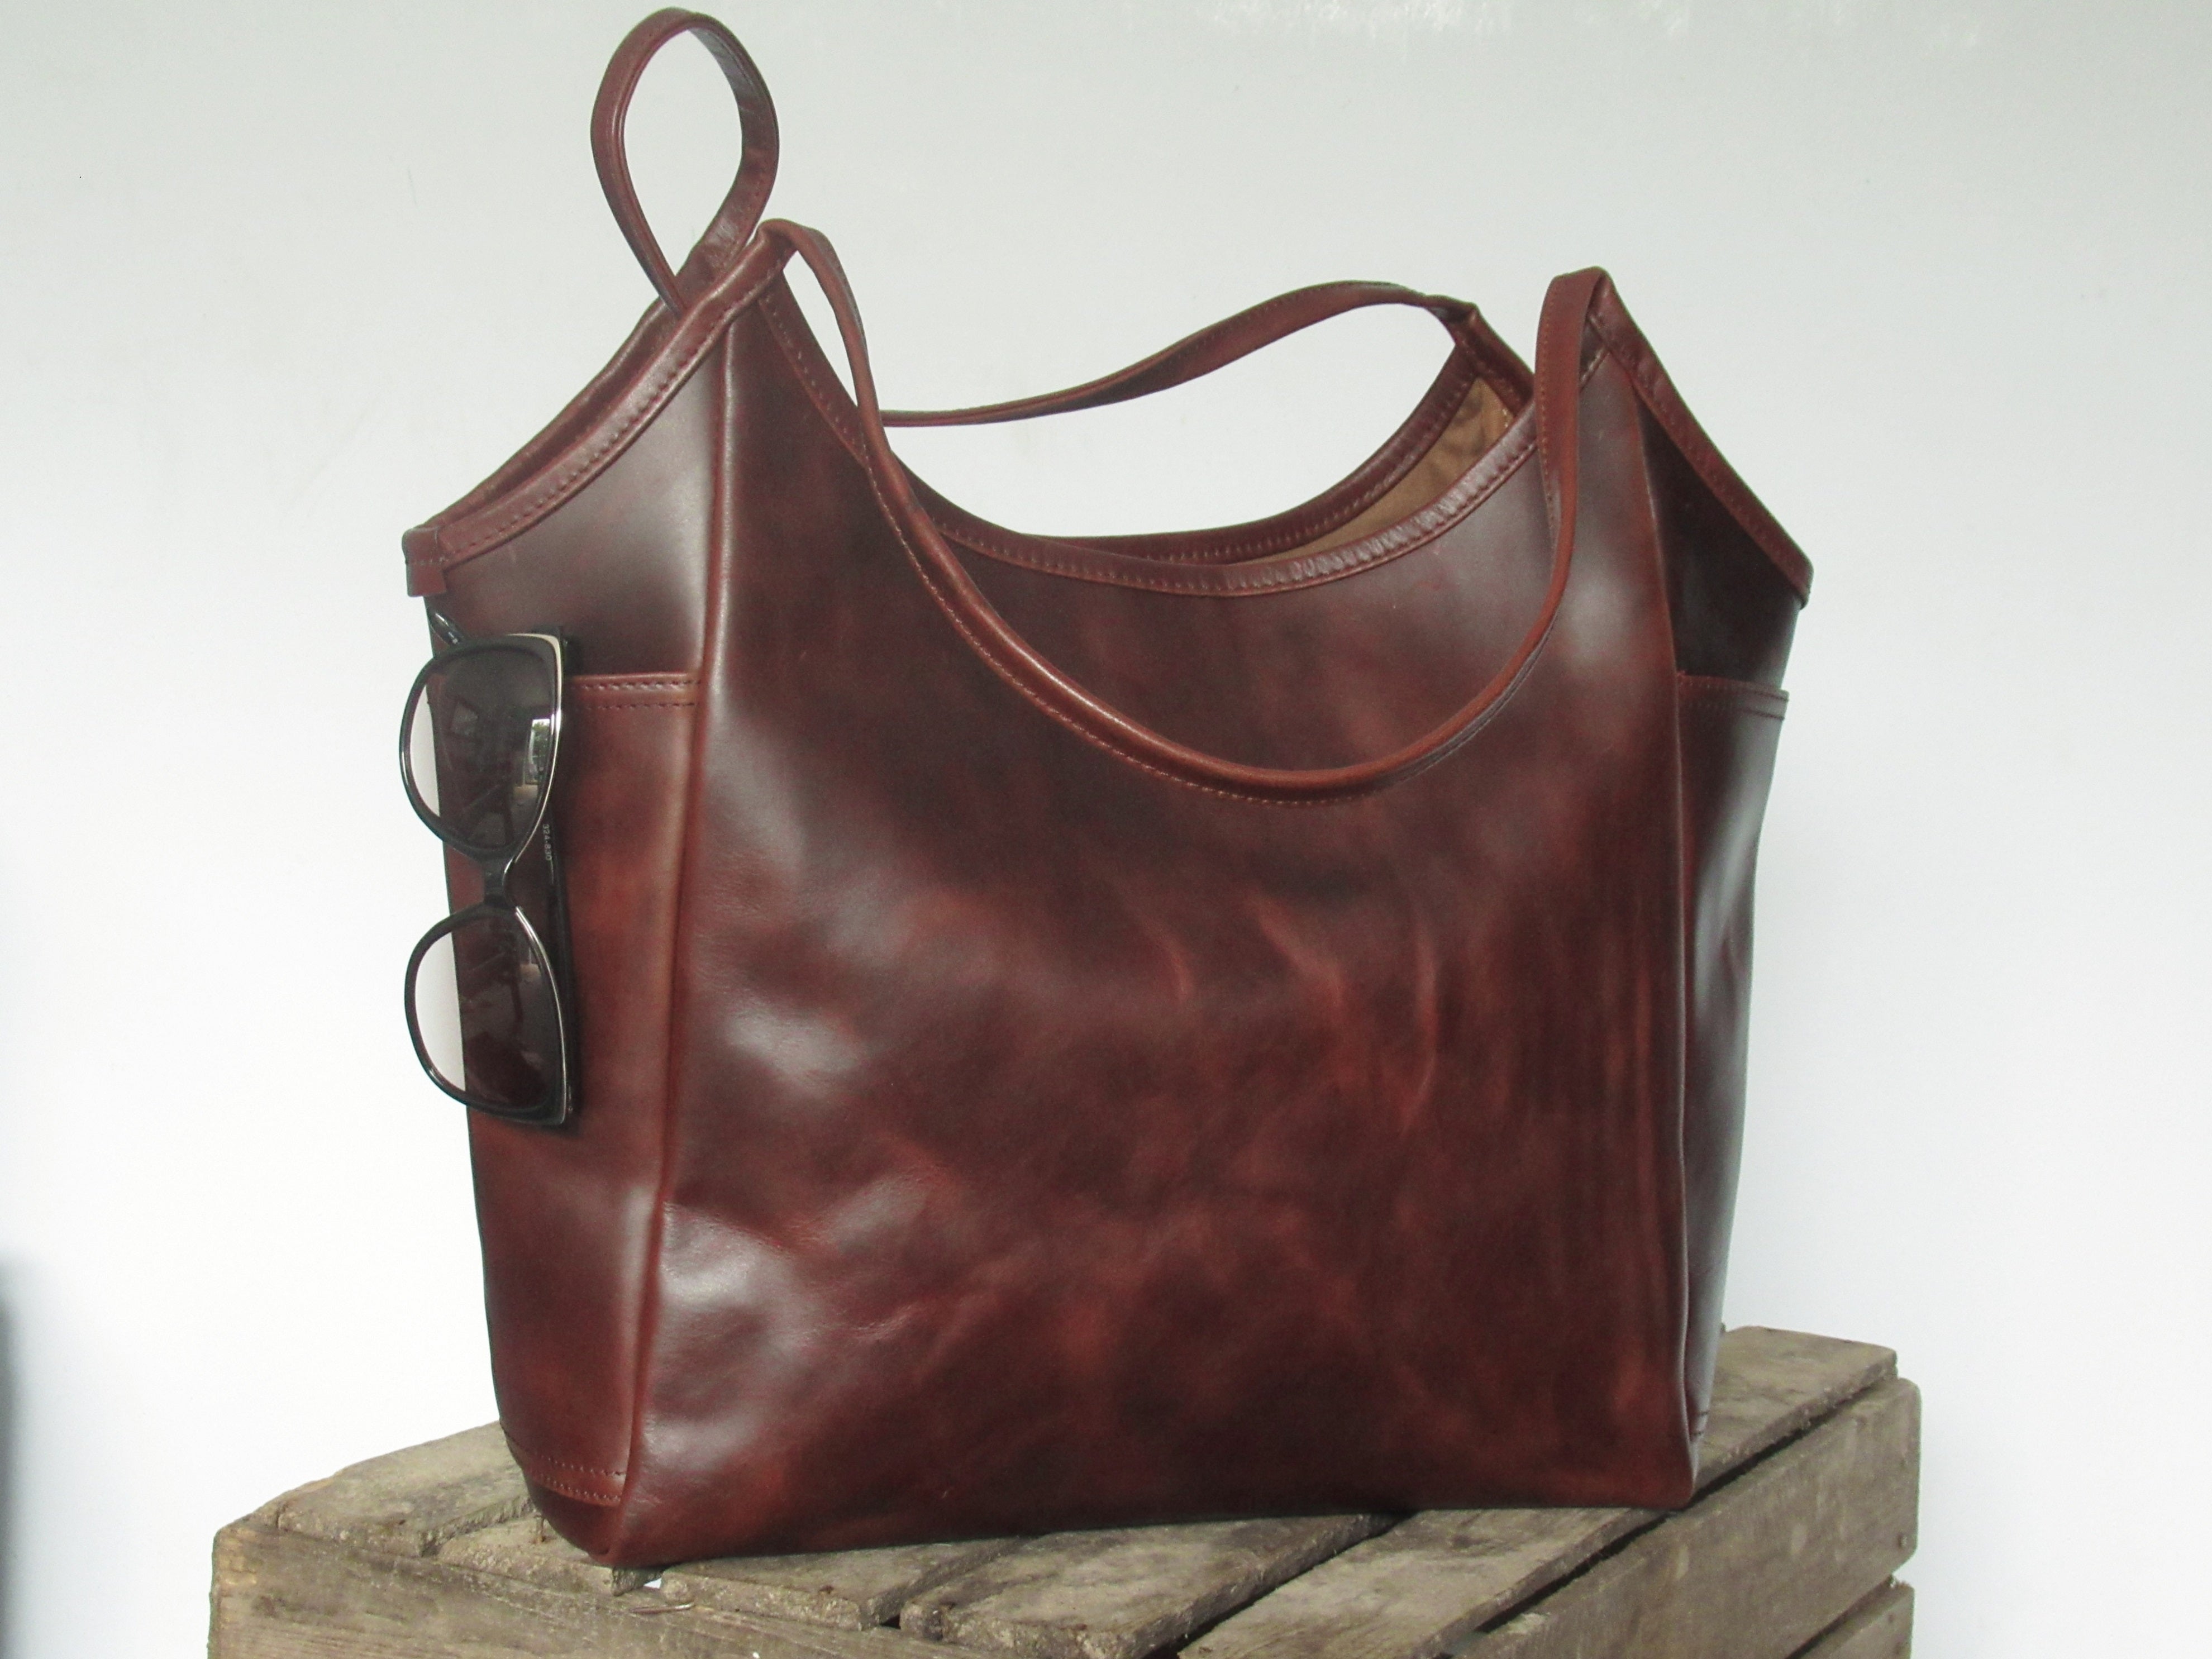 Leather shoulder sling bag